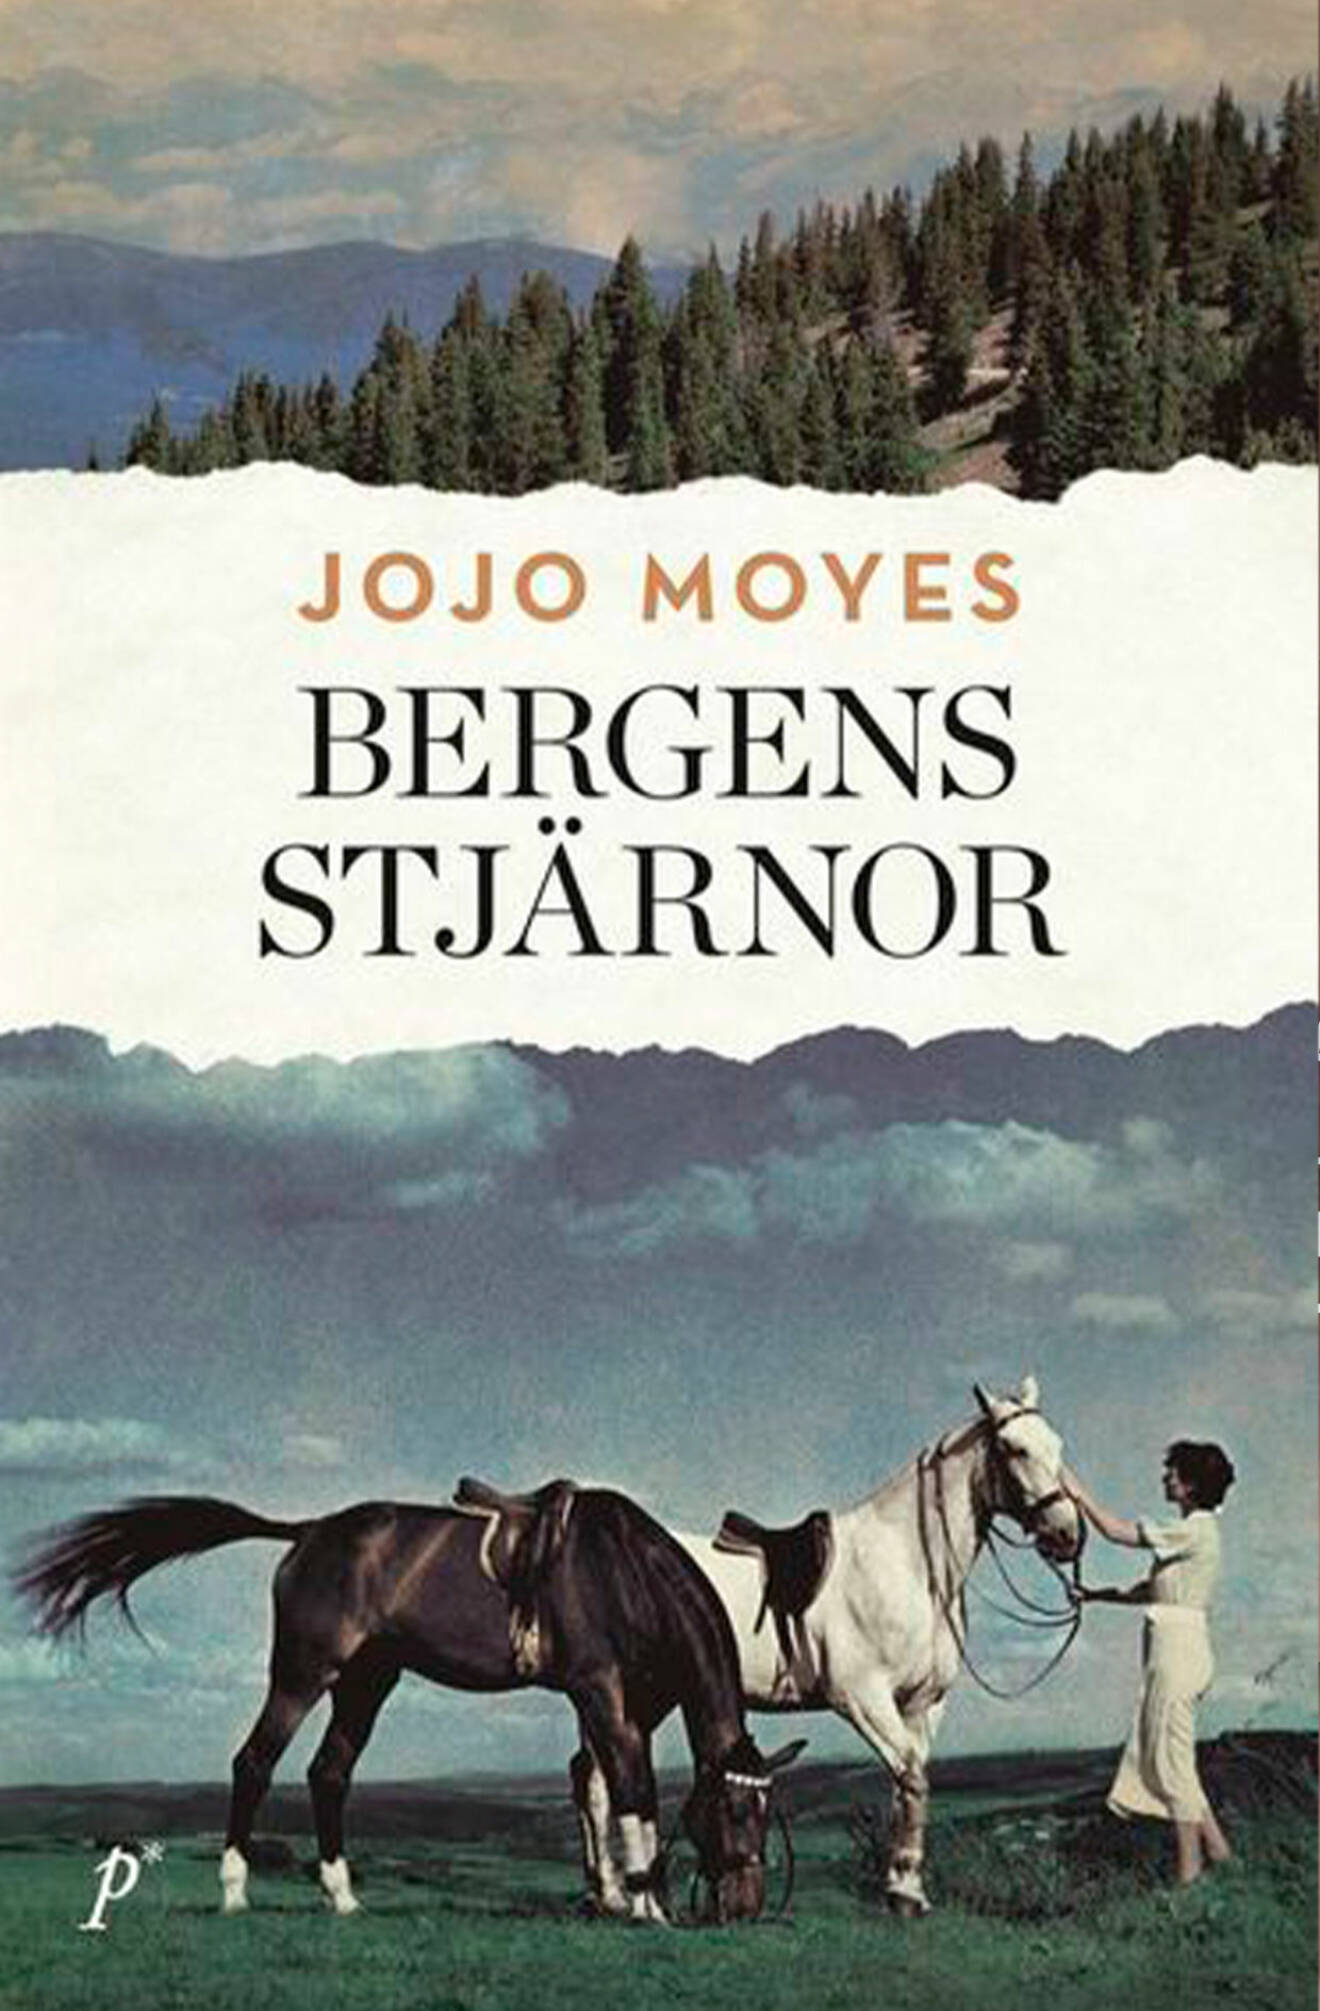 Bokomslag till Bergens stjärnor, en kvinna står vid två hästar.